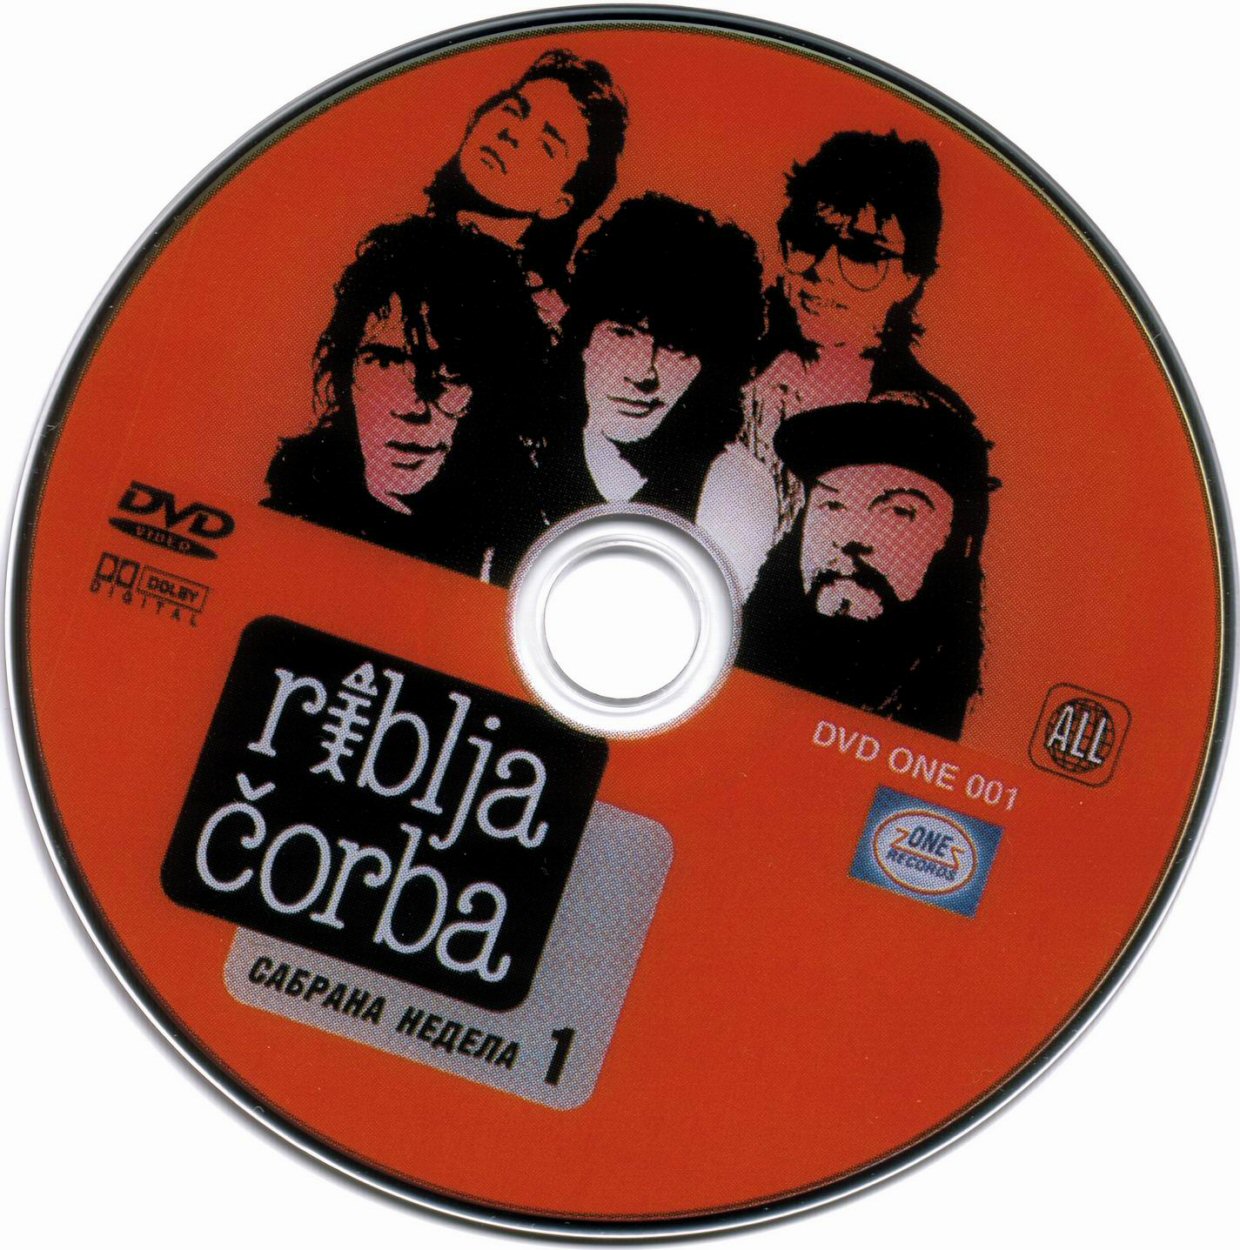 Click to view full size image -  DVD Cover - R - DVD - RIBLJA CORBA - CD - DVD - RIBLJA CORBA - CD.jpg